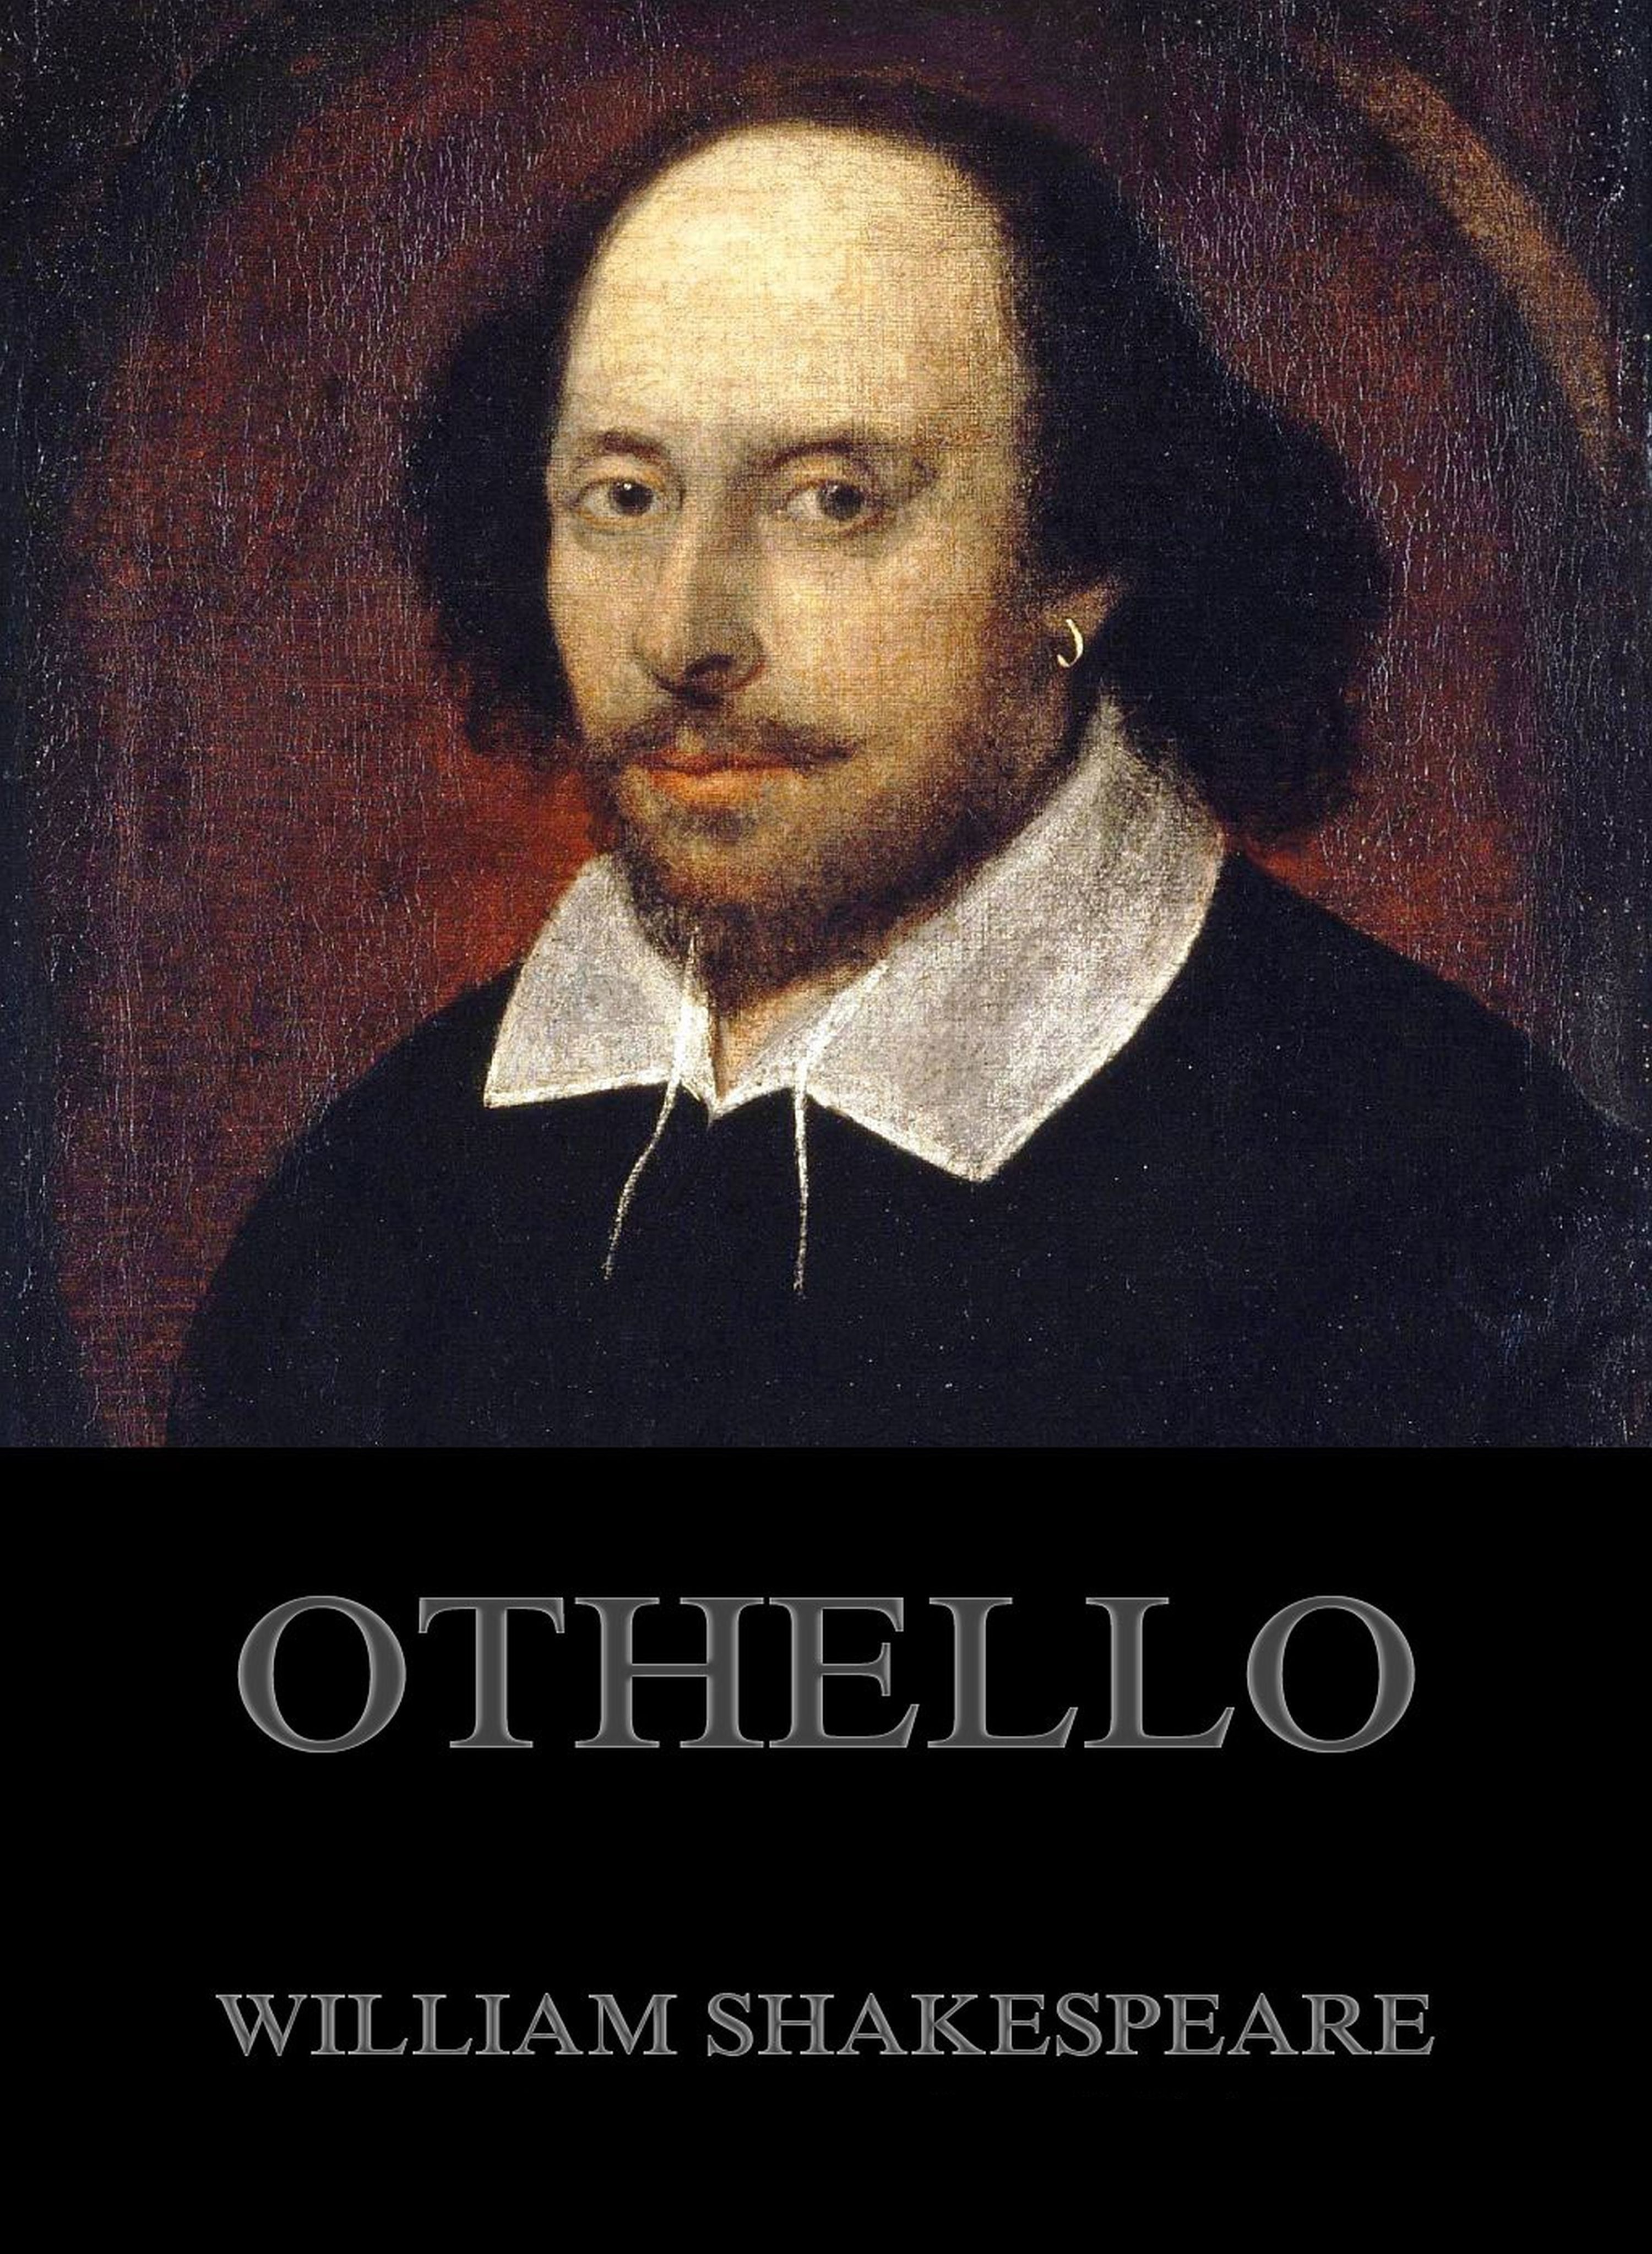 Othello